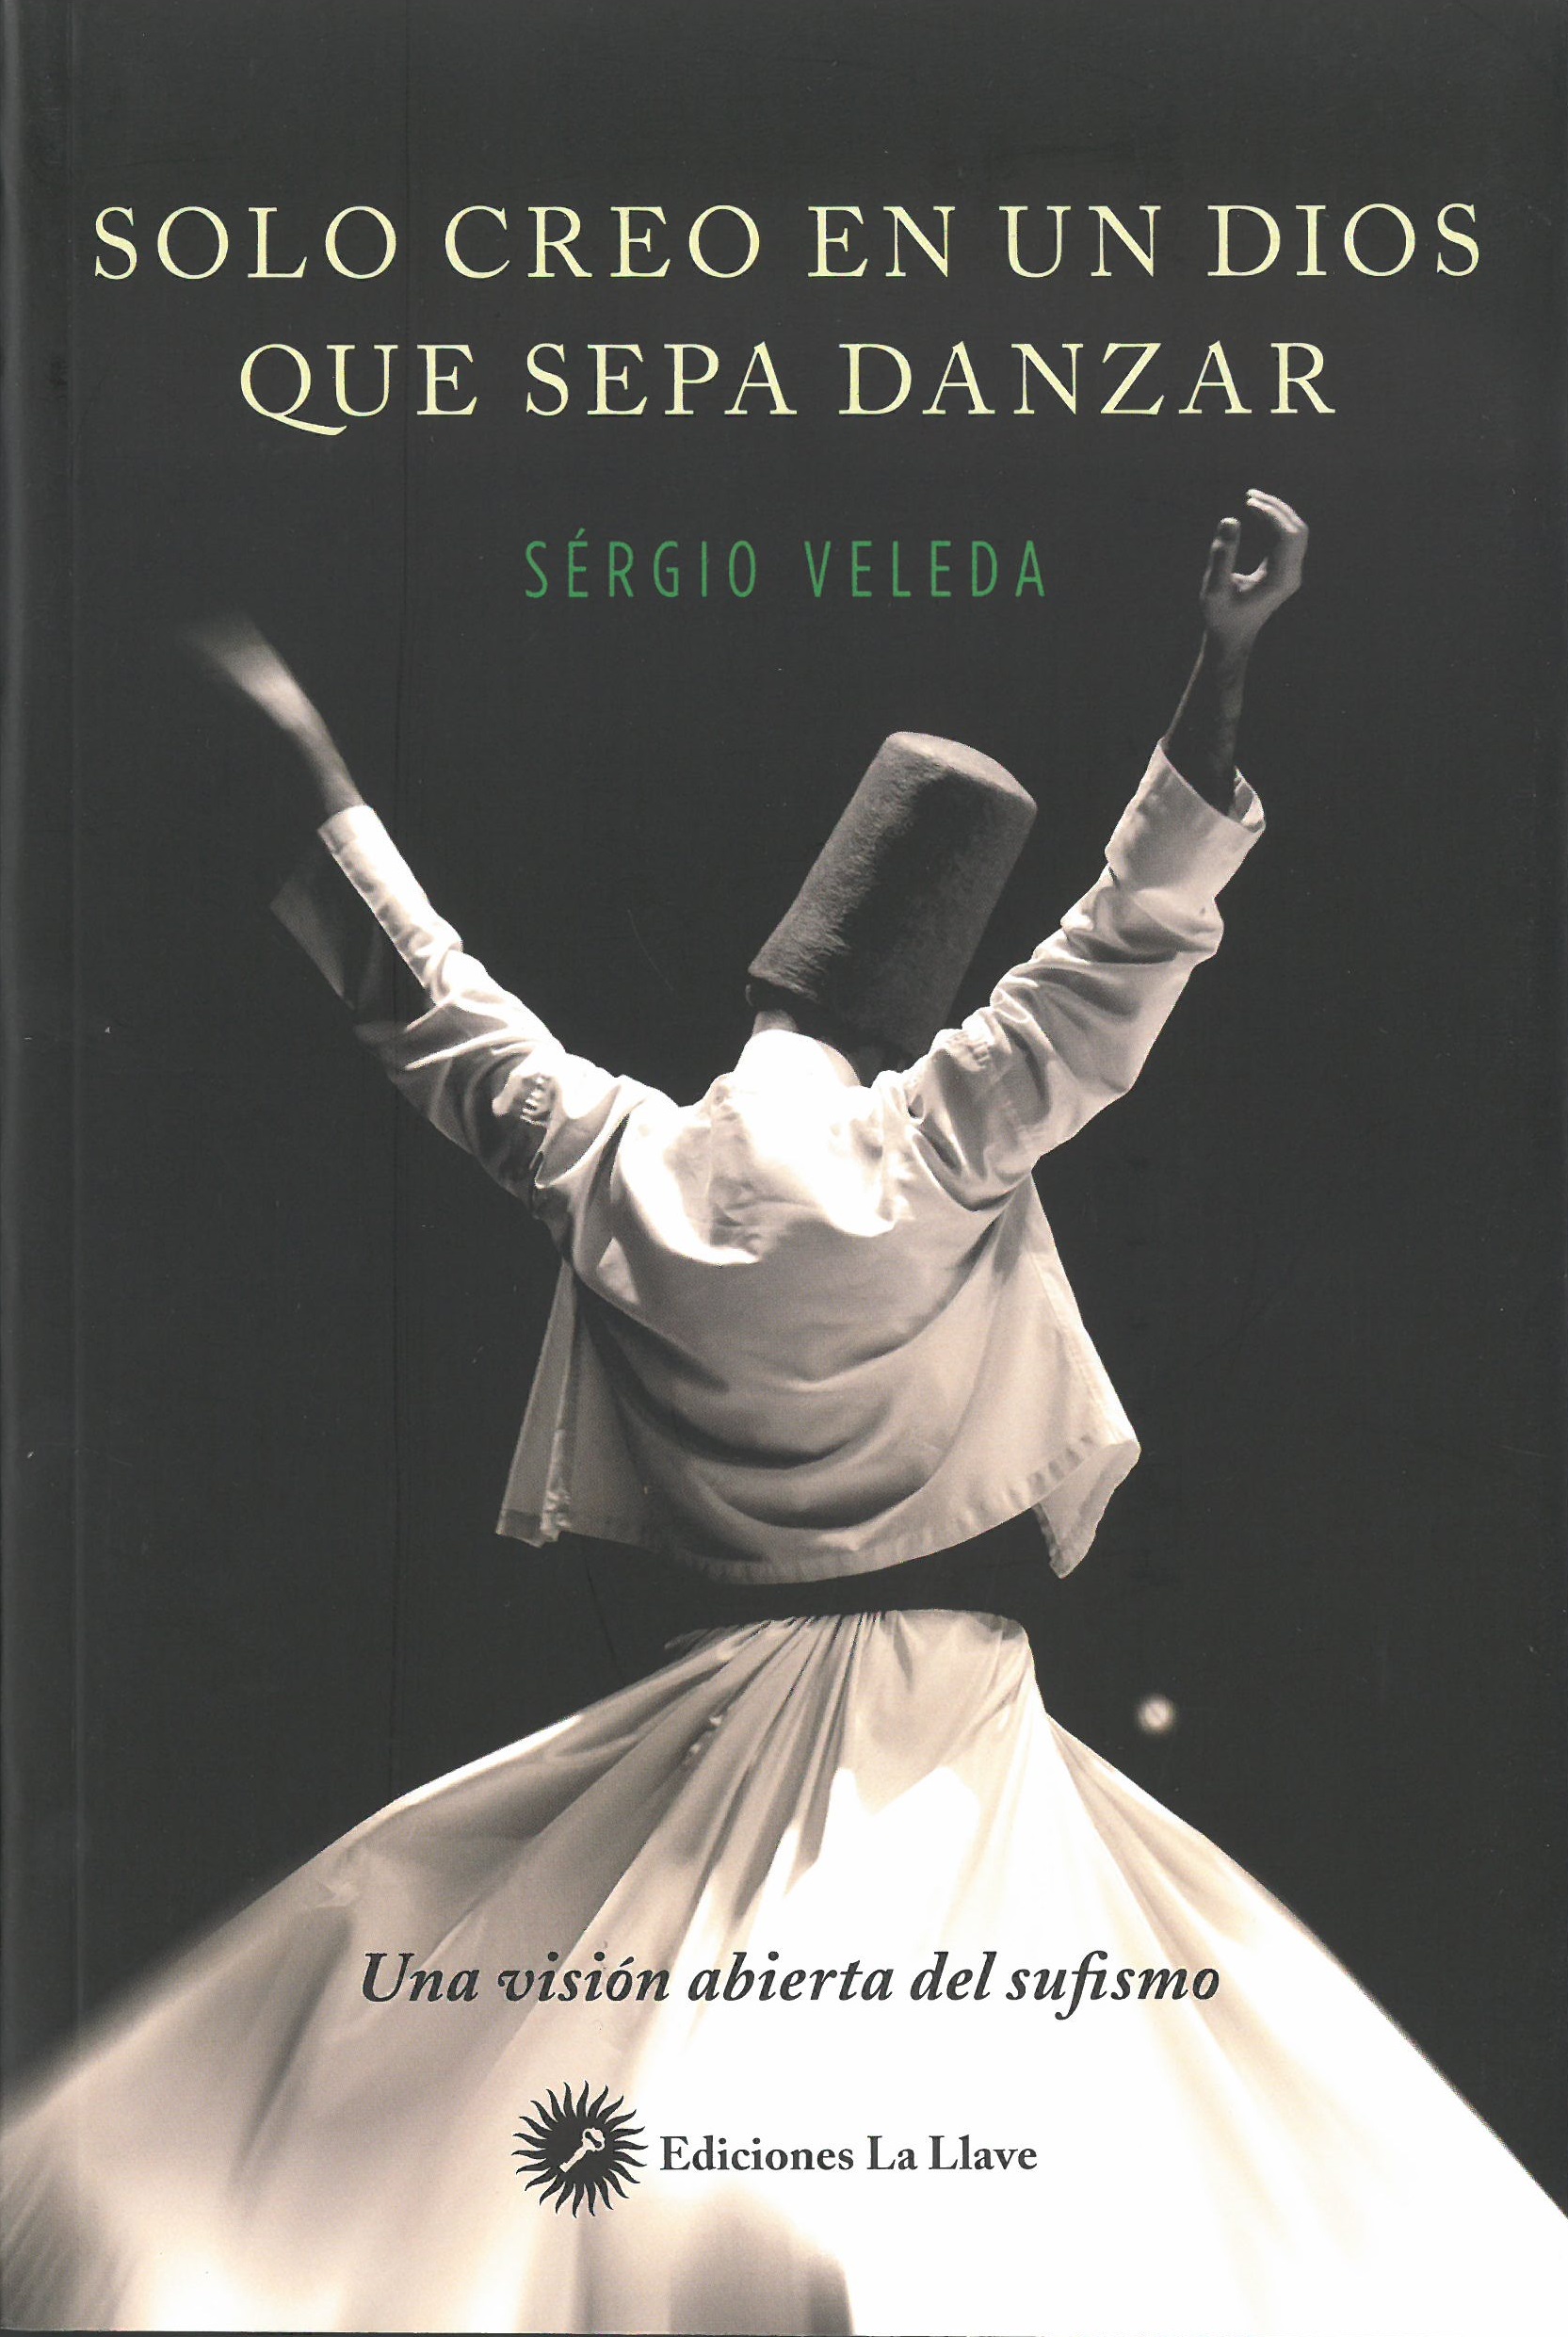 Solo creo en un dios que sepa danzar : una visión abierta del sufismo